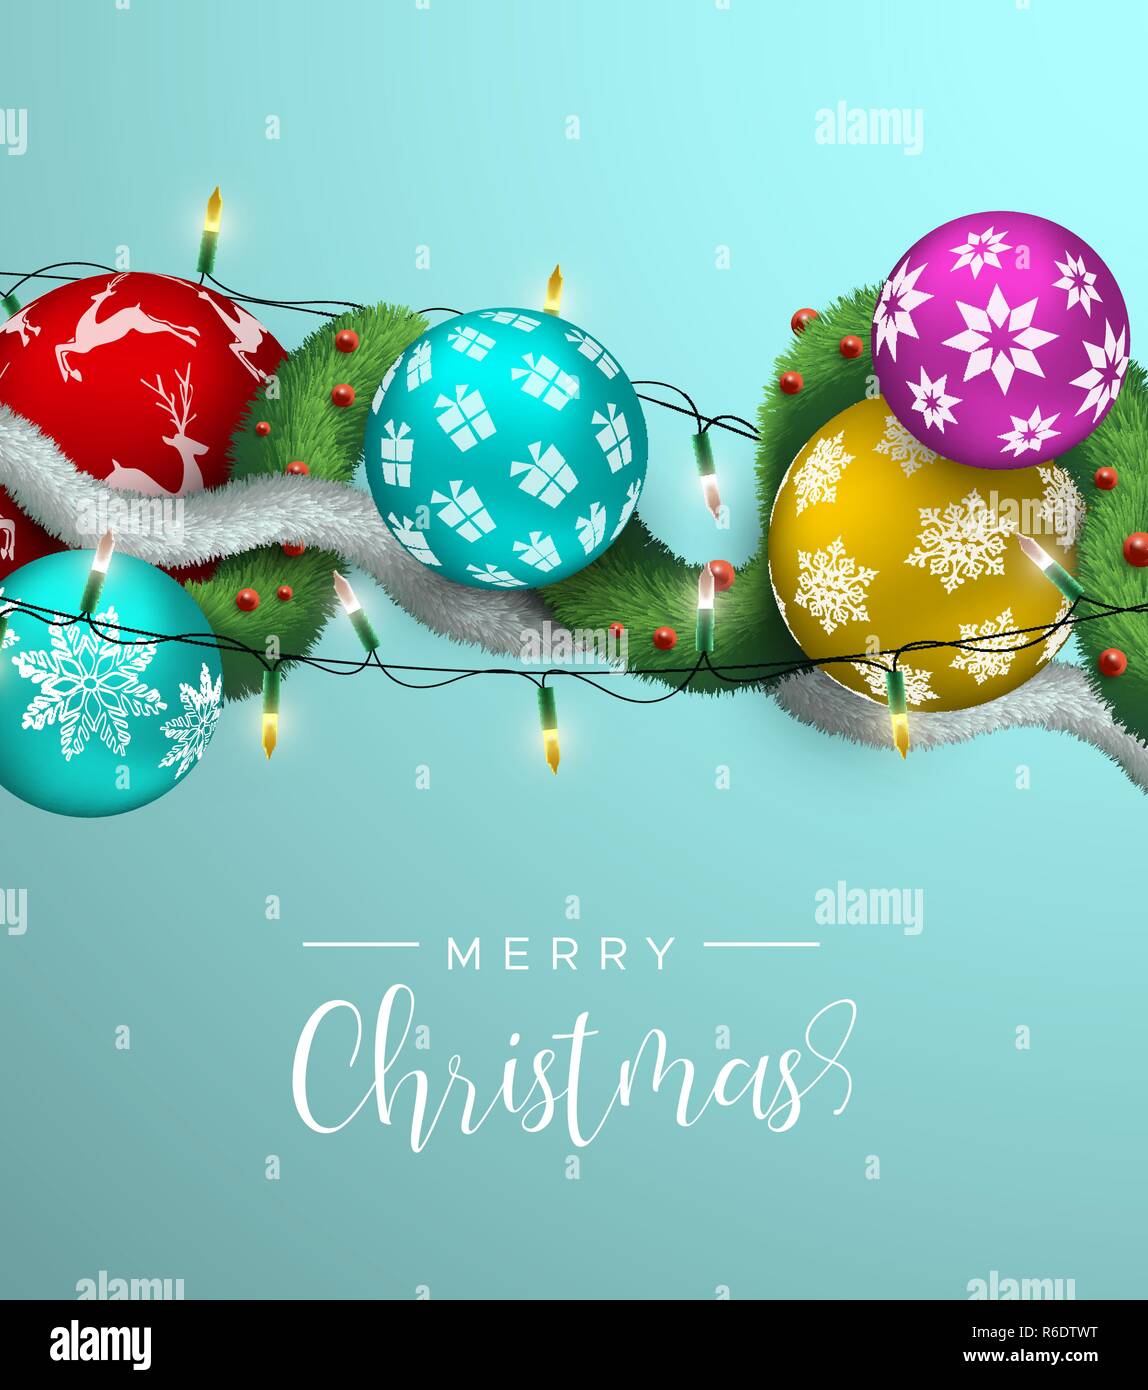 Weihnachtskarte realistische 3D-Illustration bunte Xmas bauble Ornamente mit Lichtern und Kiefer Girlande. Mehrfarbige urlaub Kugeln Hintergrund Stock Vektor